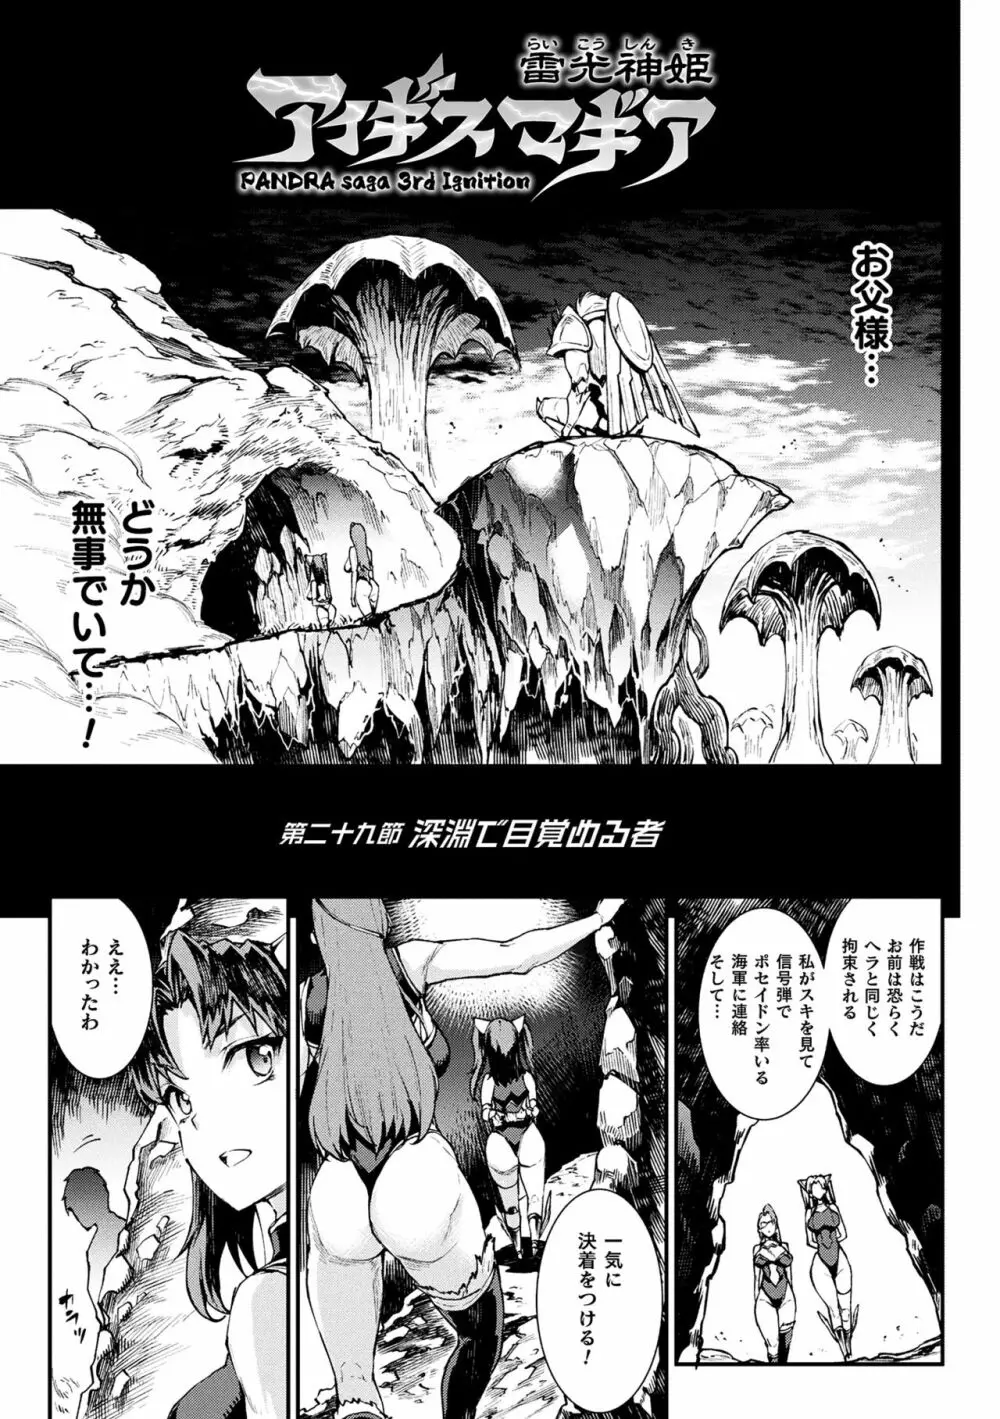 雷光神姫アイギスマギアIII ―PANDRA saga 3rd ignition― 4 77ページ